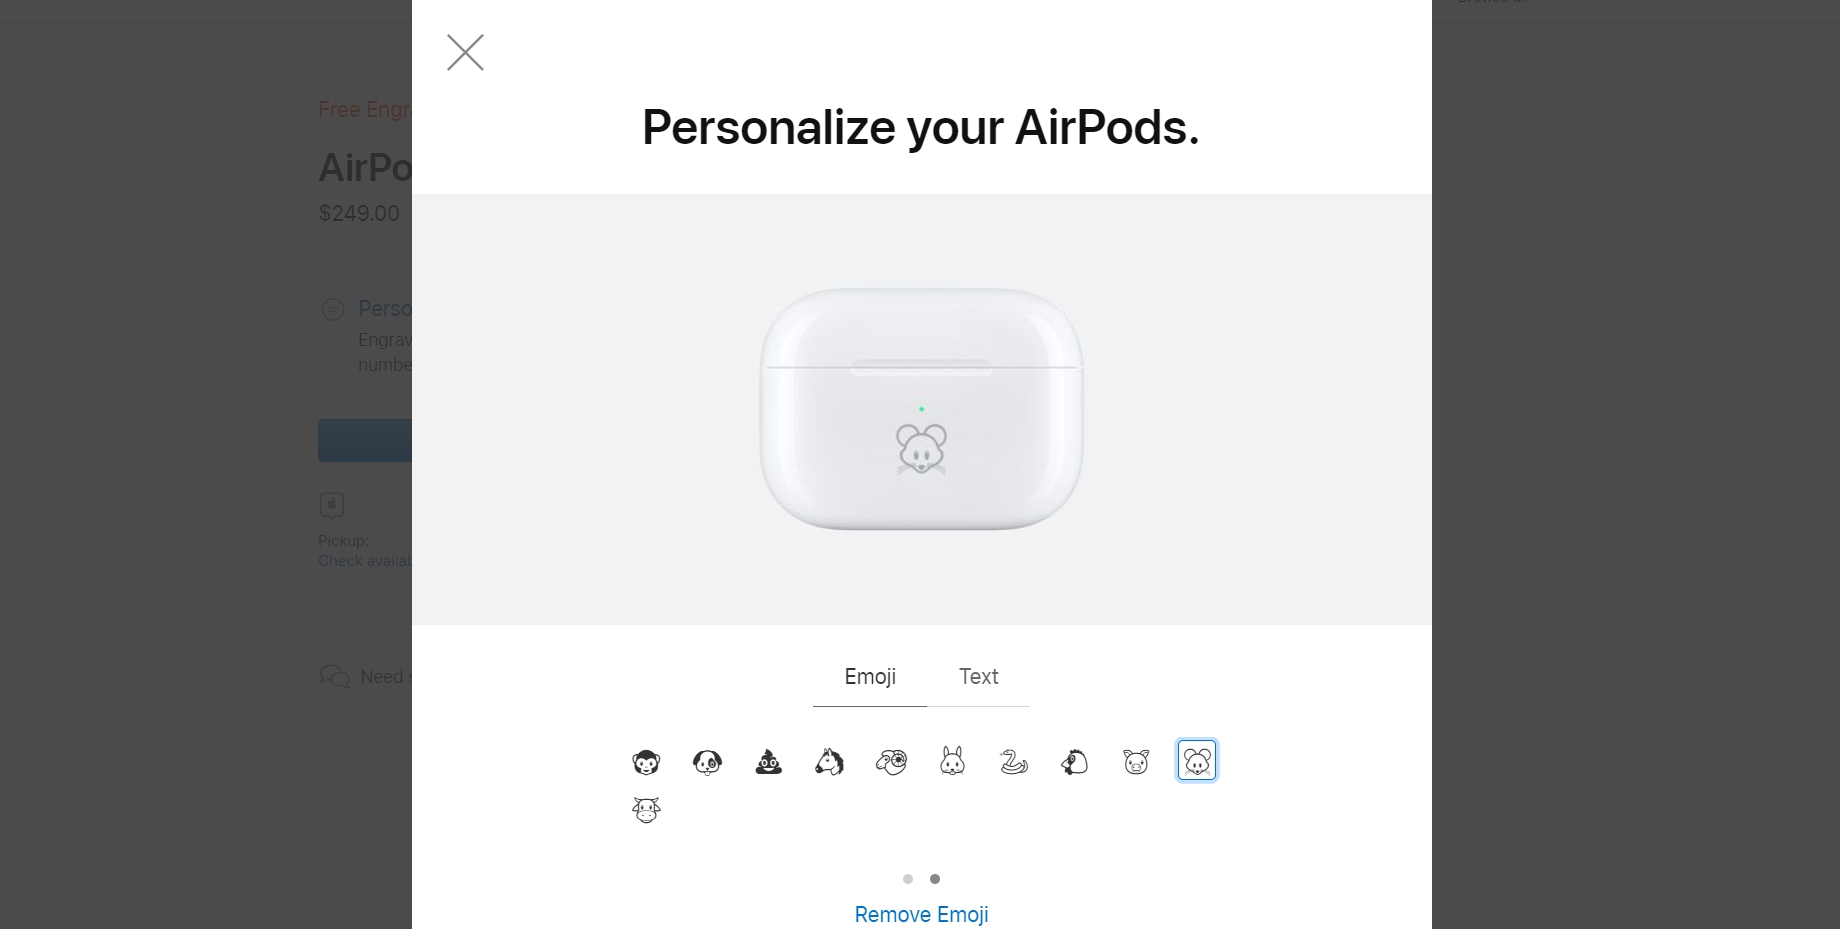 Apple hiện đã cho phép khắc biểu tượng emoji lên hộp sạc AirPods